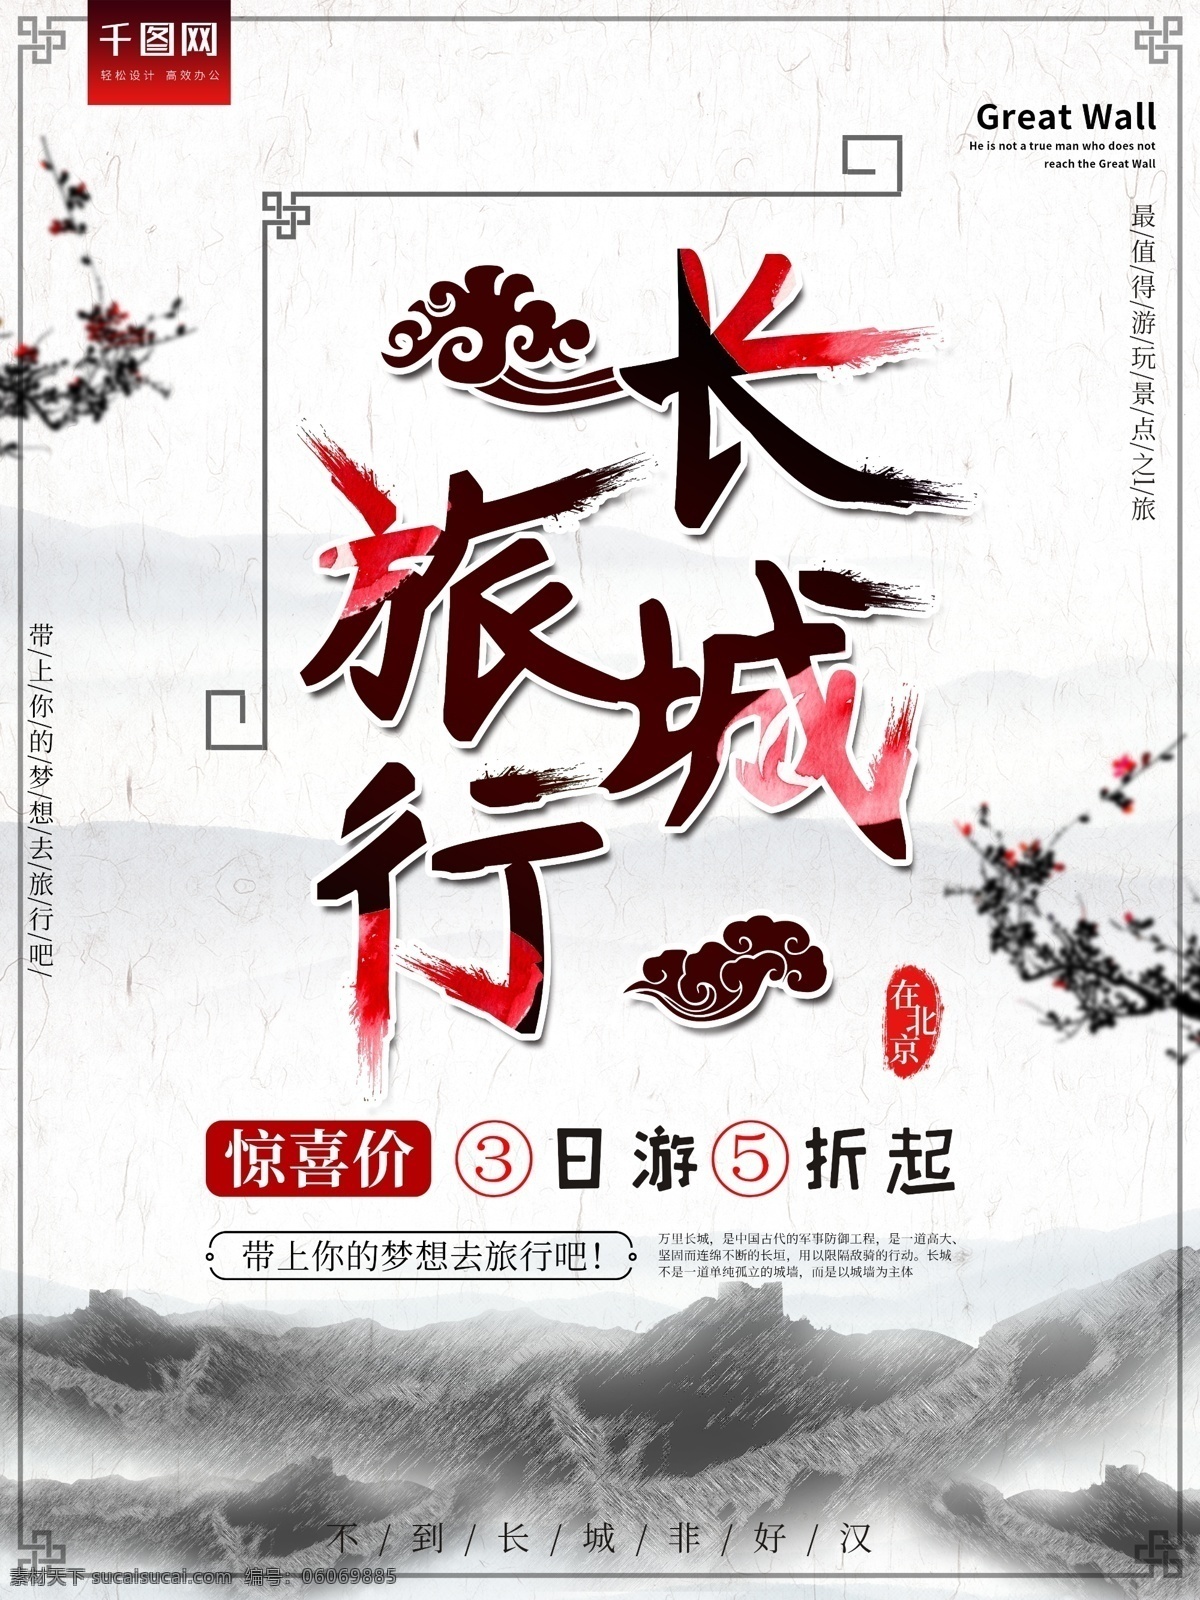 北京 长城 水墨 风 古风 旅游 海报 旅游海报 促销海报 旅行 渐变 北京长城 水墨风 方框 墨水 拉丝